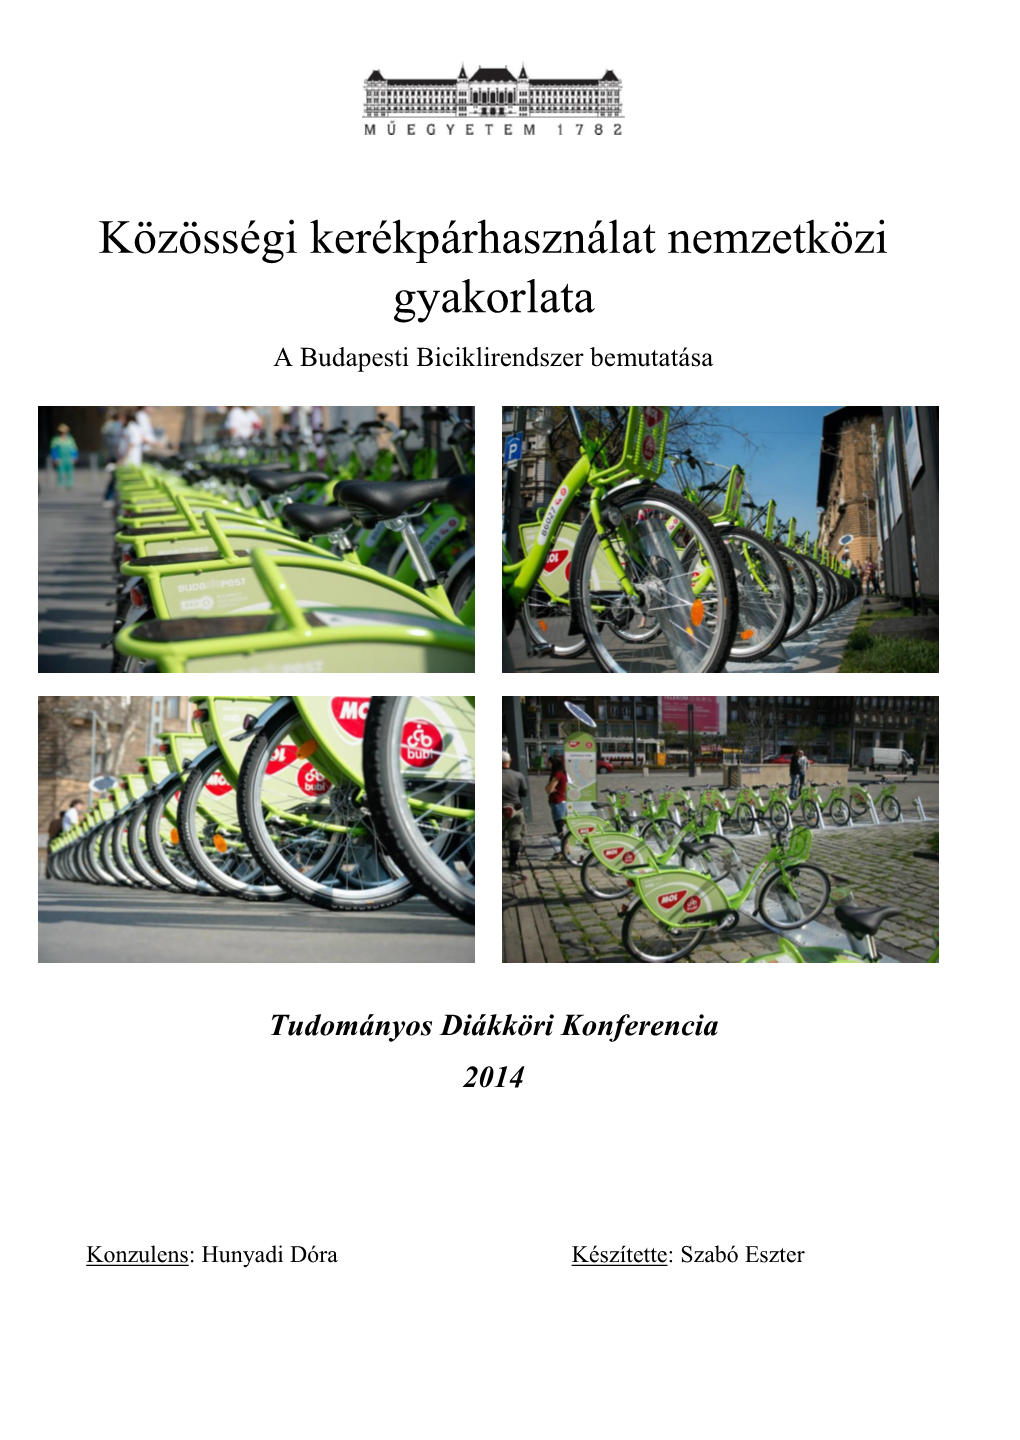 Közösségi Kerékpárhasználat Nemzetközi Gyakorlata a Budapesti Biciklirendszer Bemutatása